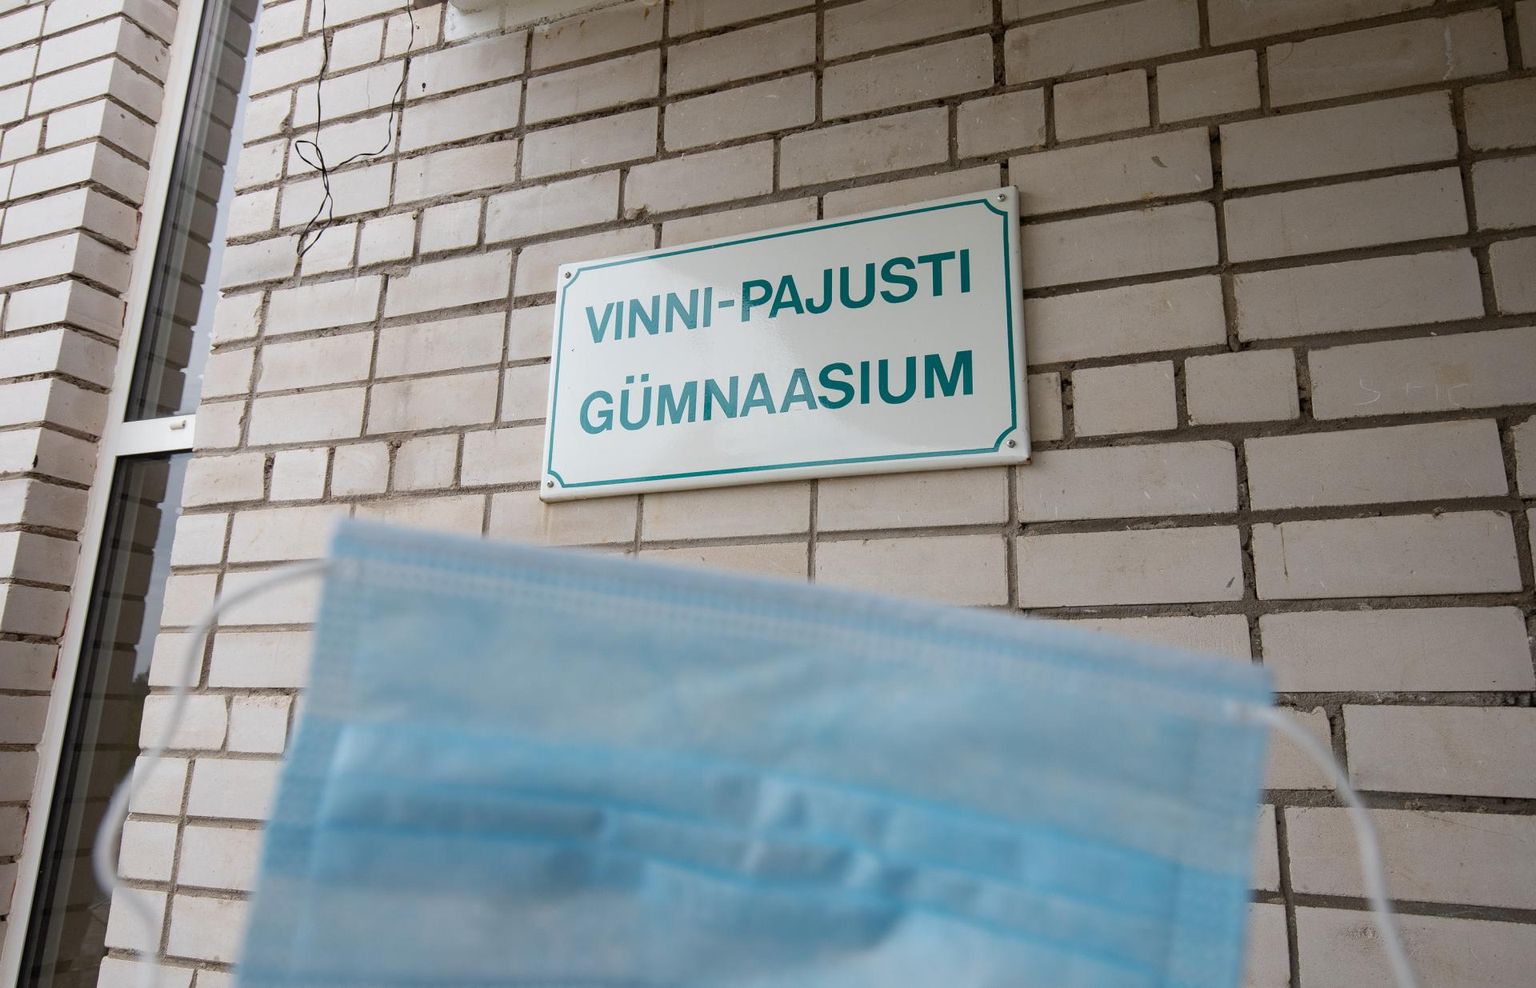 Vinni-Pajusti gümnaasiumi direktori Henry Kallaste sõnul tuleb vaktsineerimata õpetajal kanda maski.